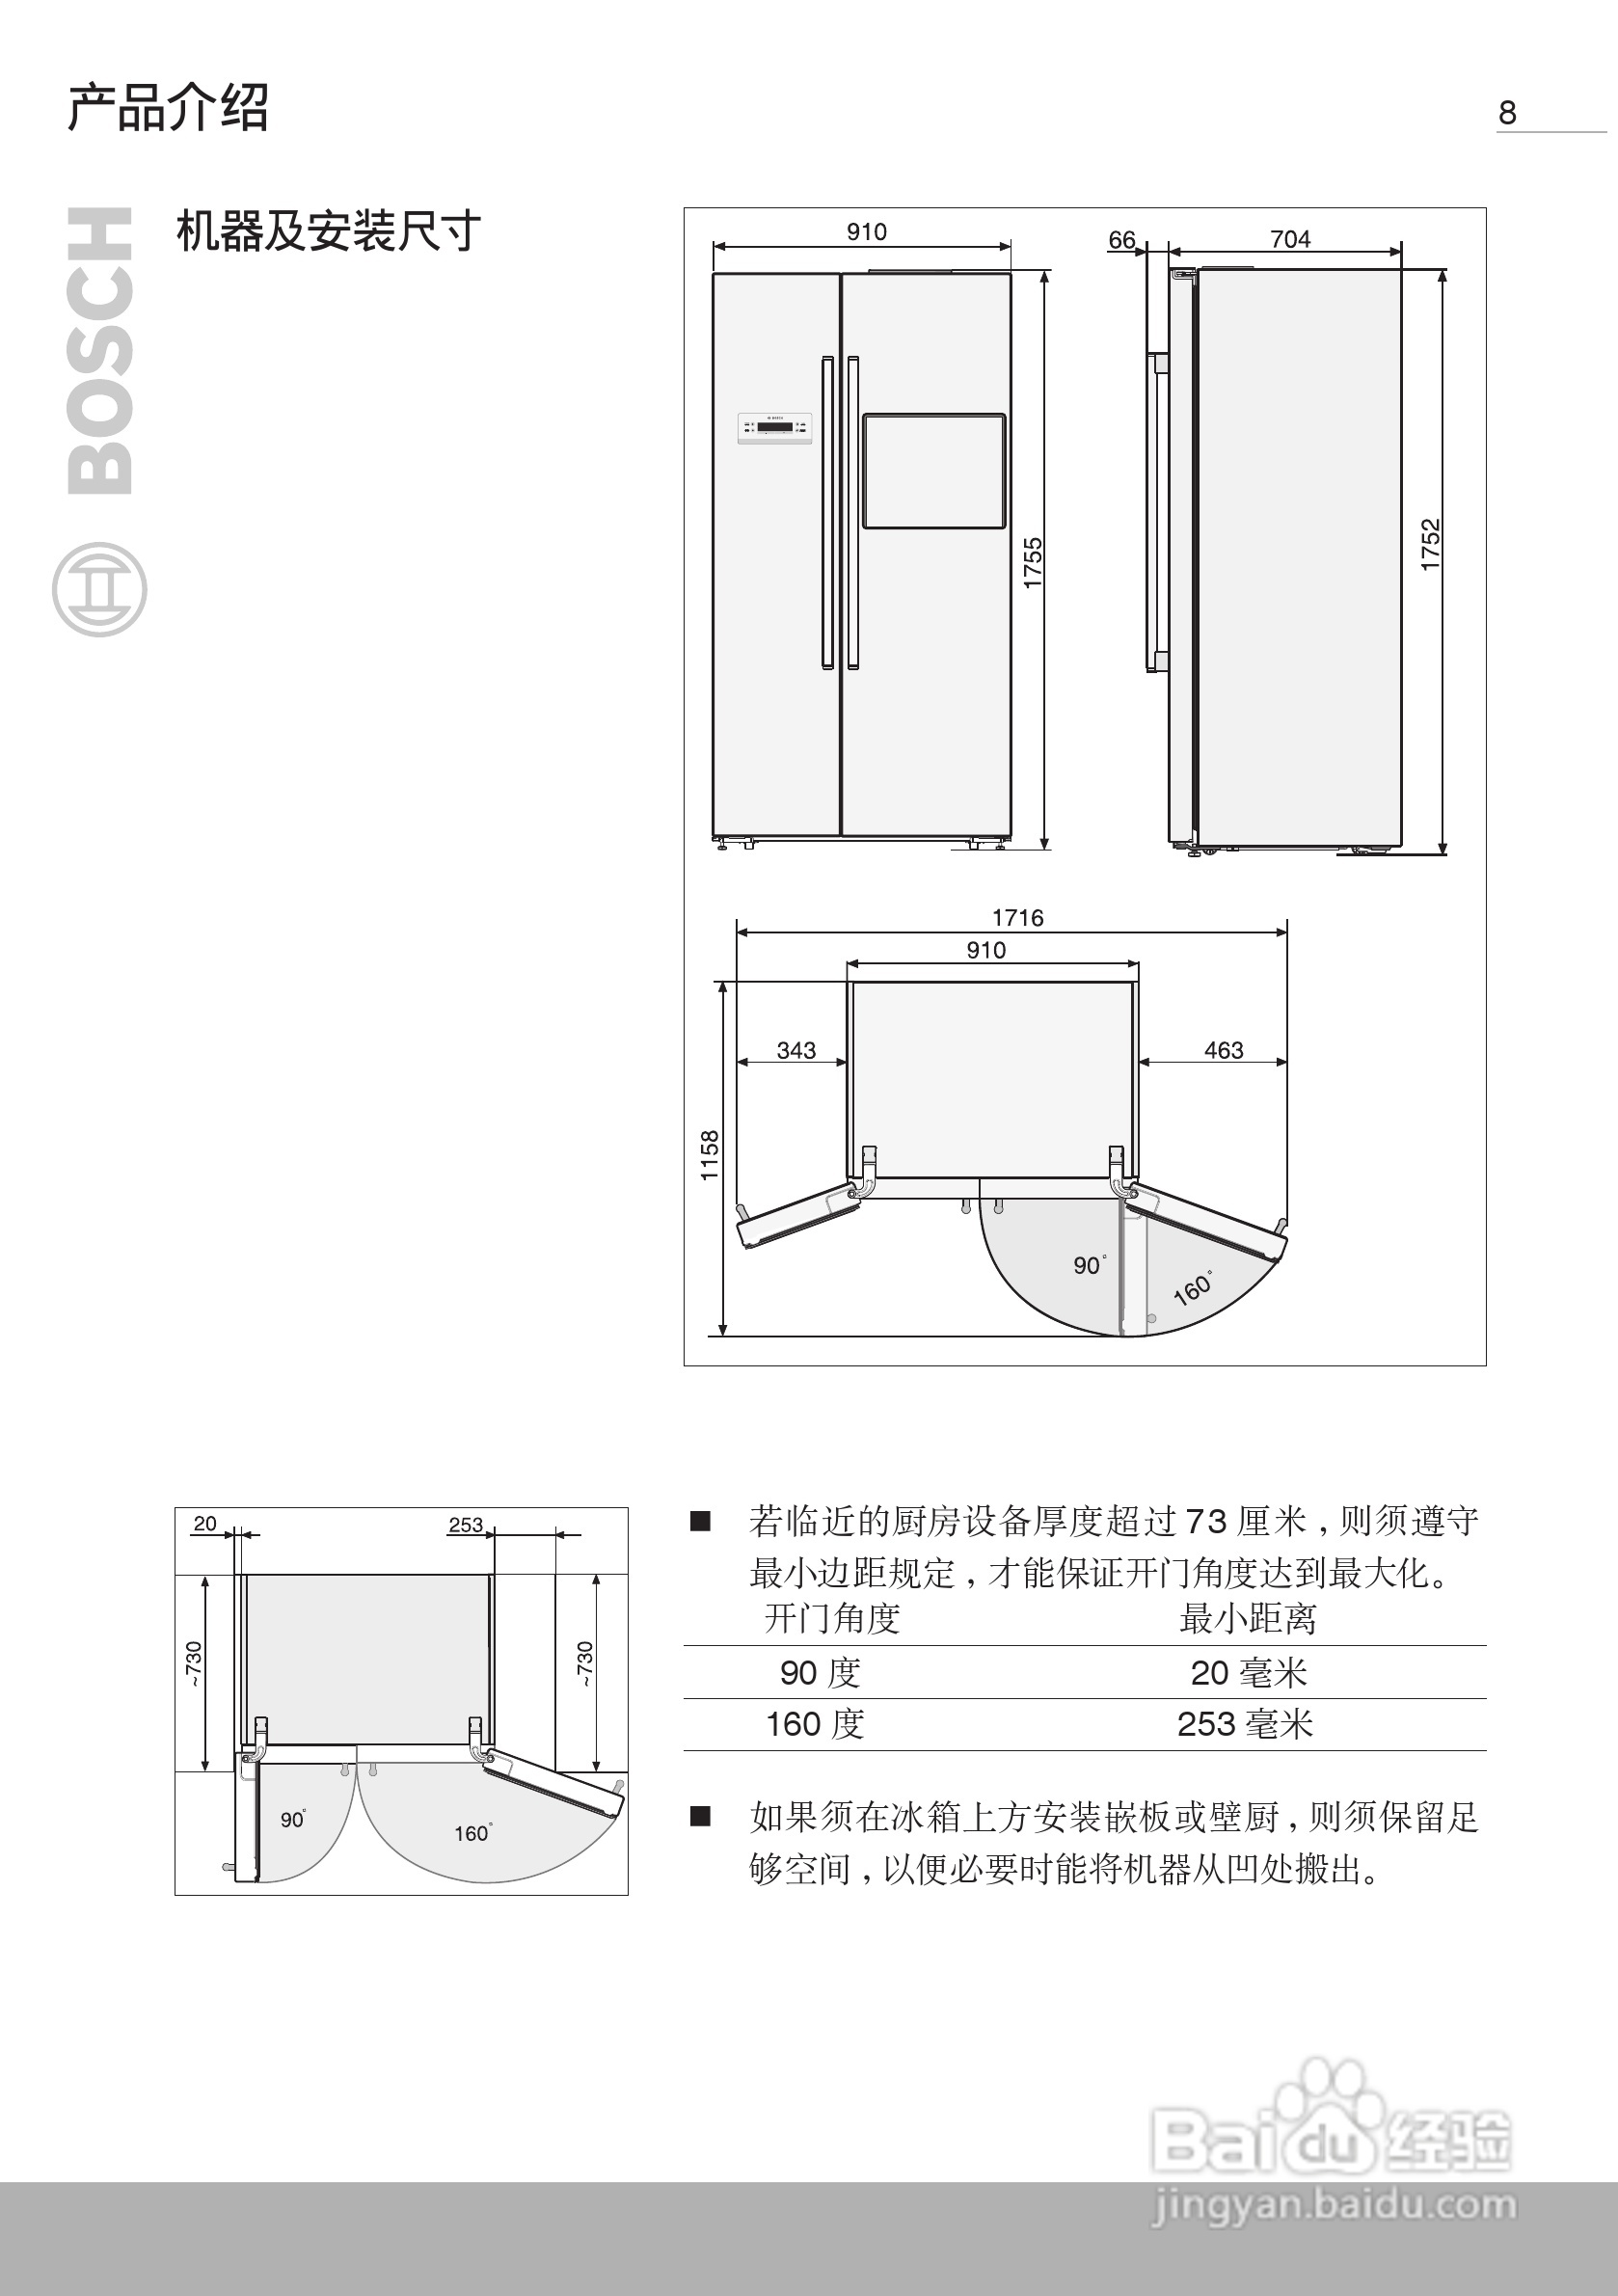 博世kan62v20ti双开门家用电冰箱使用说明书:[1]